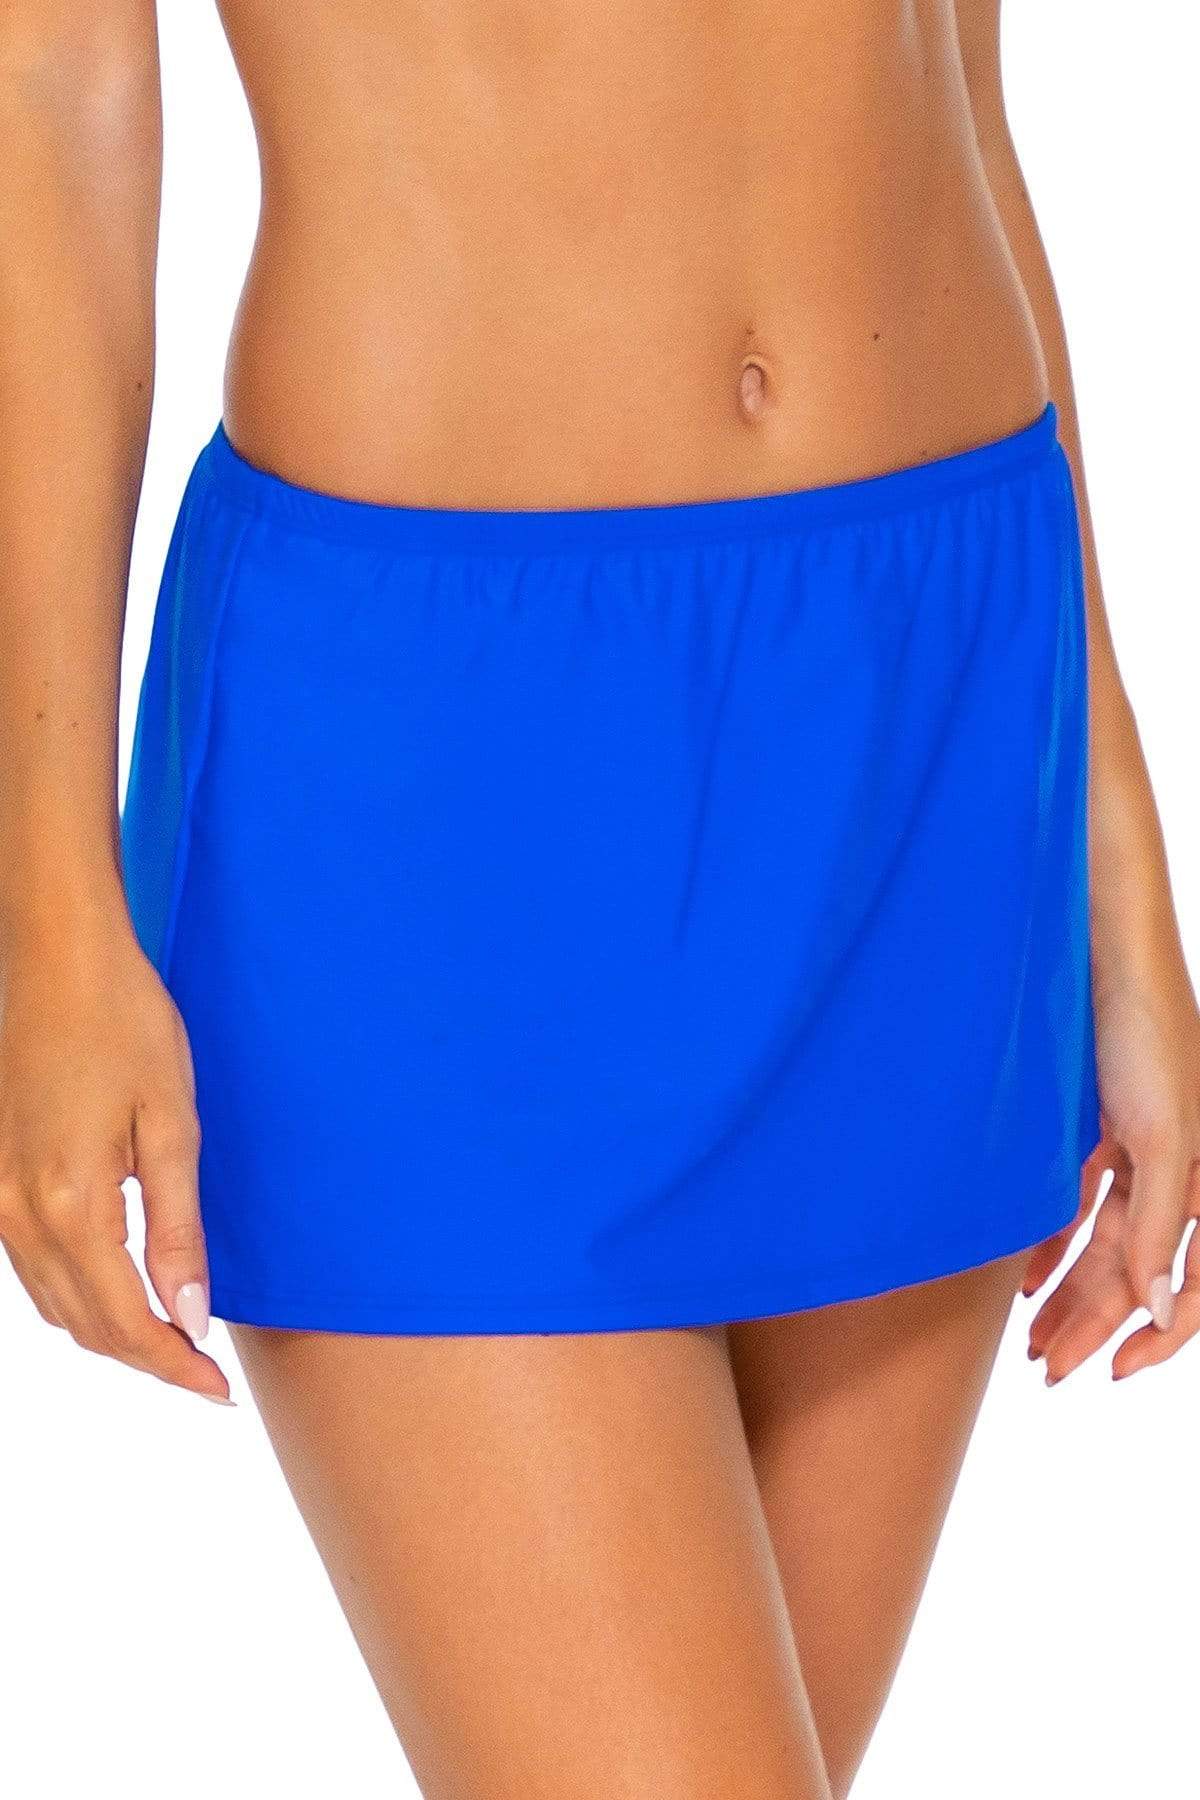 Bestswimwear -  Sunsets Imperial Blue Kokomo Swim Skirt